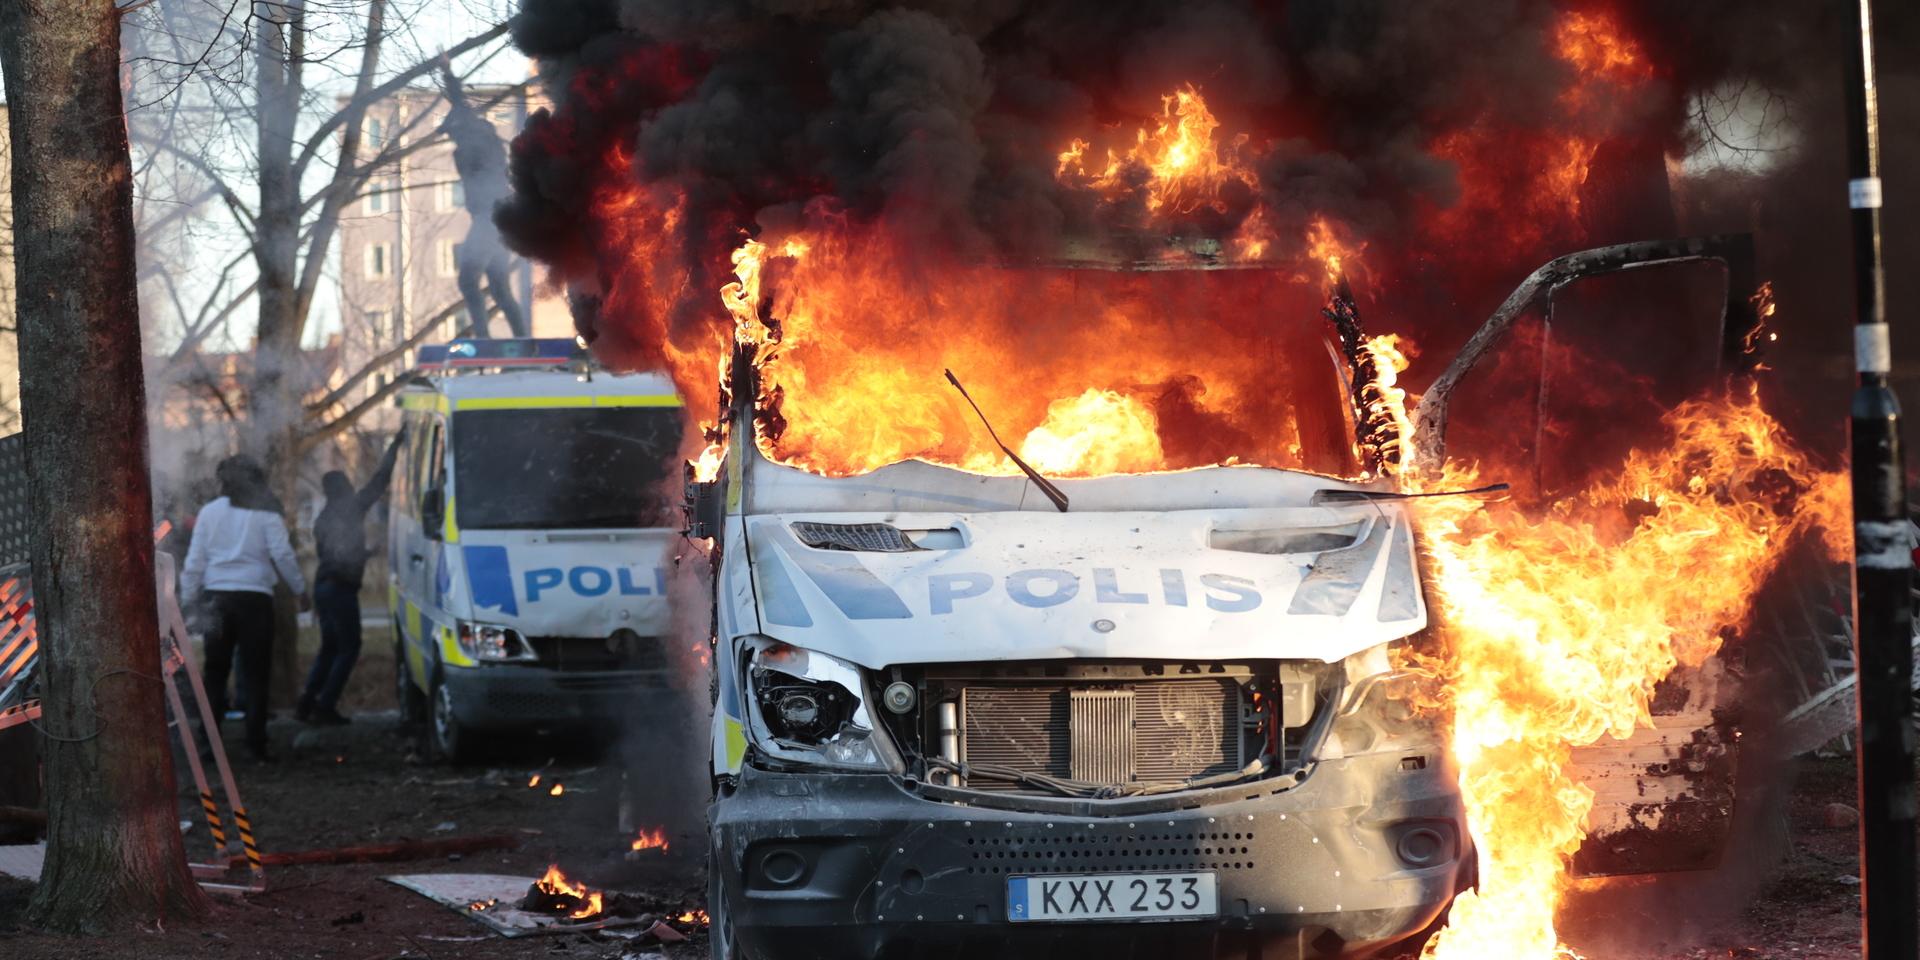 Polisbilar sattes i brand i Örebro, där Rasmus Paludan, partiledare för det danska högerextrema partiet Stram kurs, under långfredagen fick tillstånd för en sammankomst.